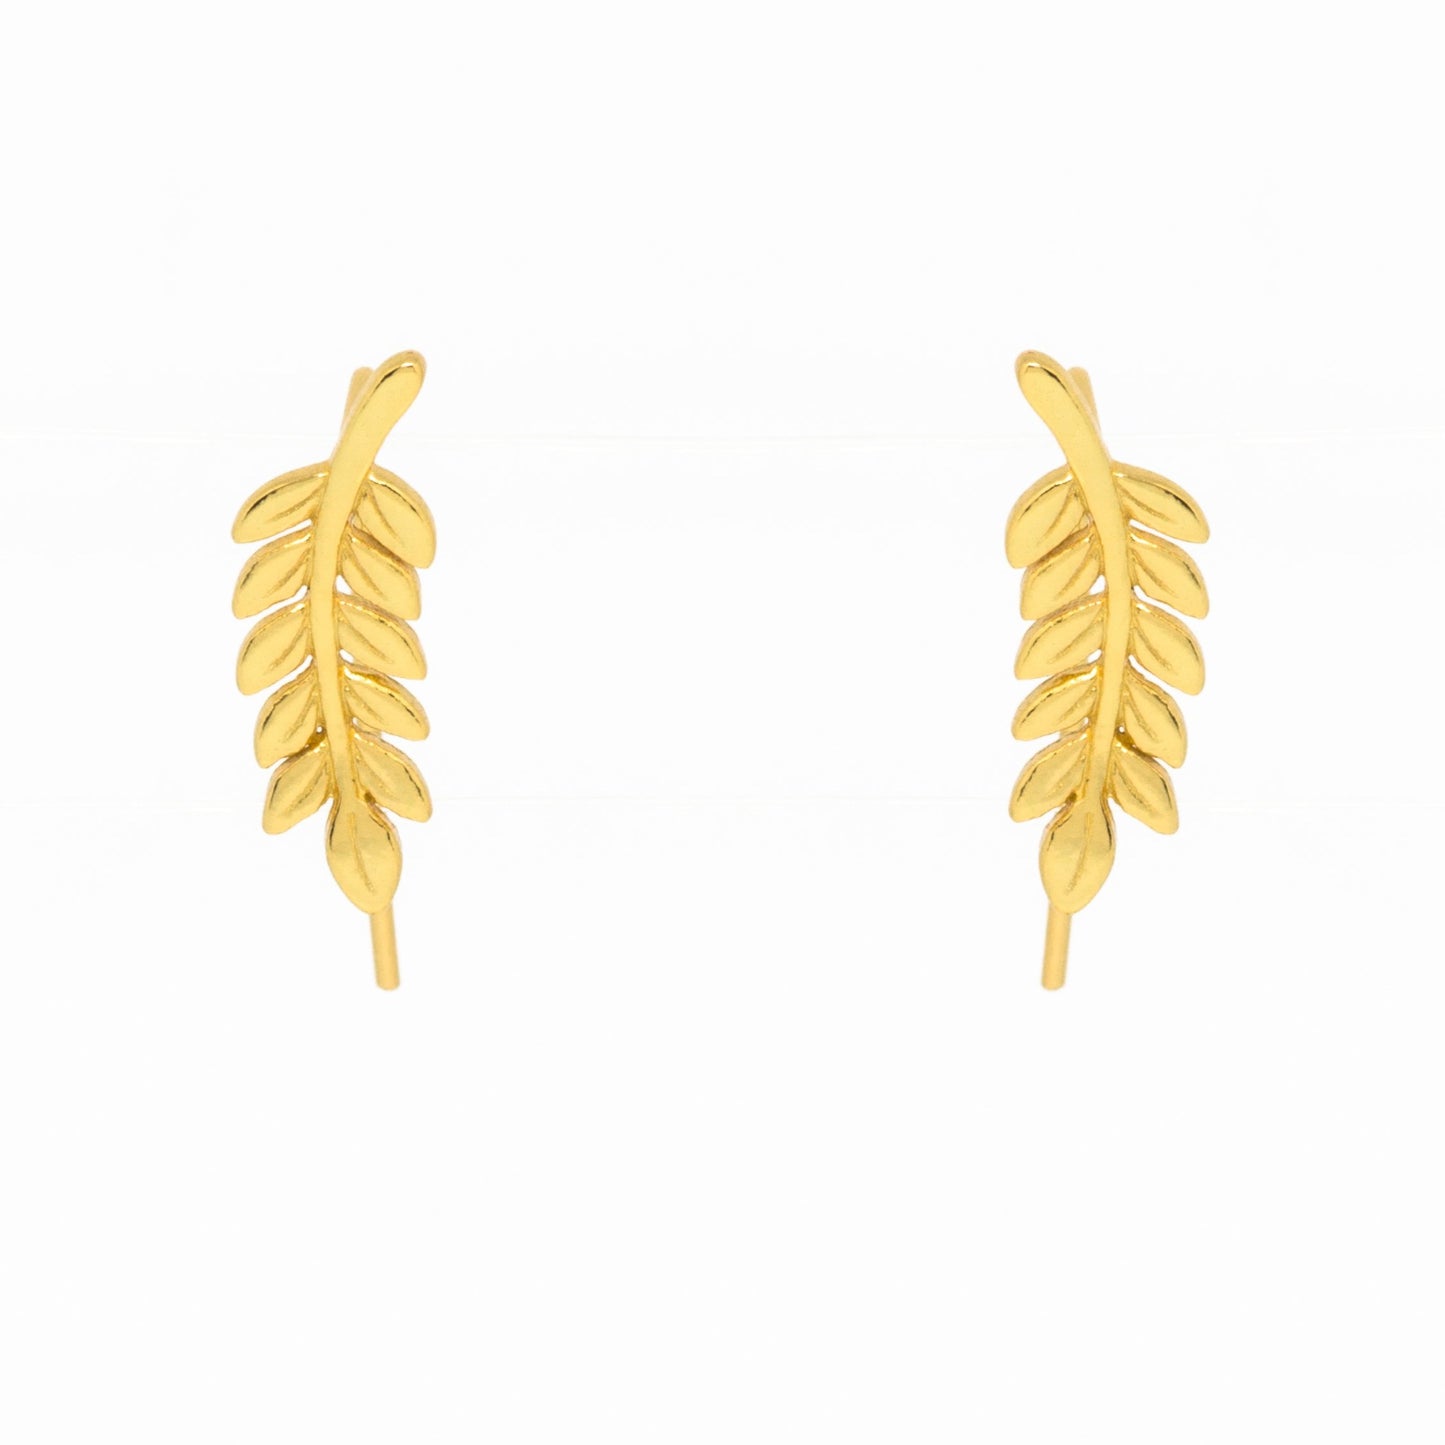 Common Ash Leaf Branch Ear Cuffs - Gold, Earrings - Blaack Fox